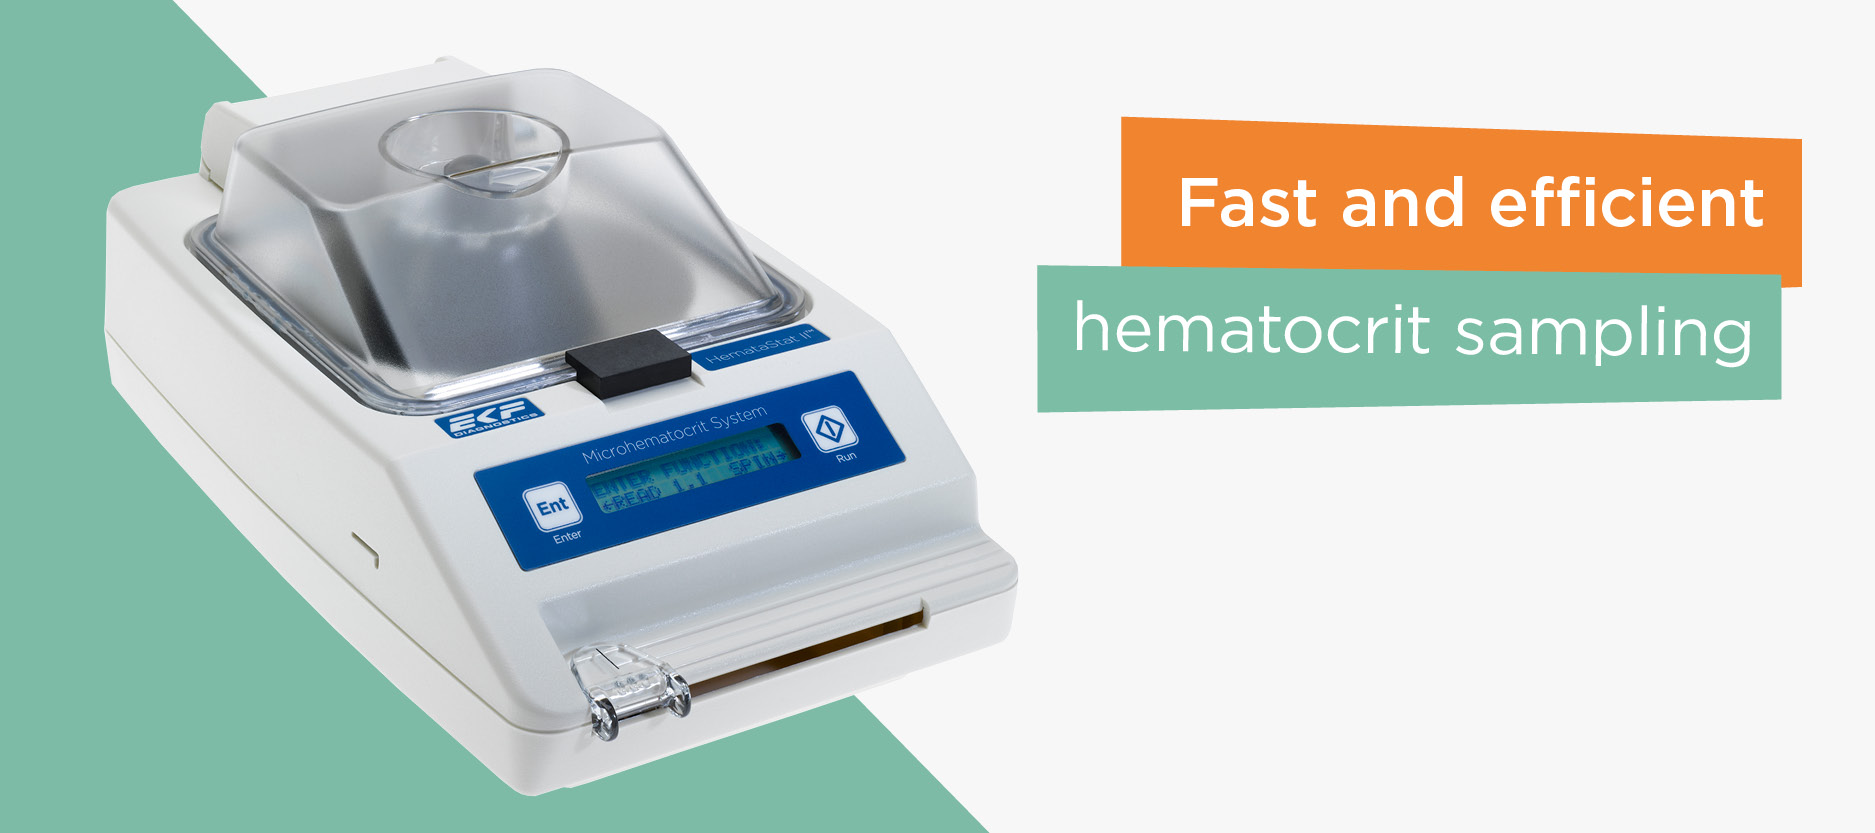 Hematastat-Hematocrit-Analyzer-2